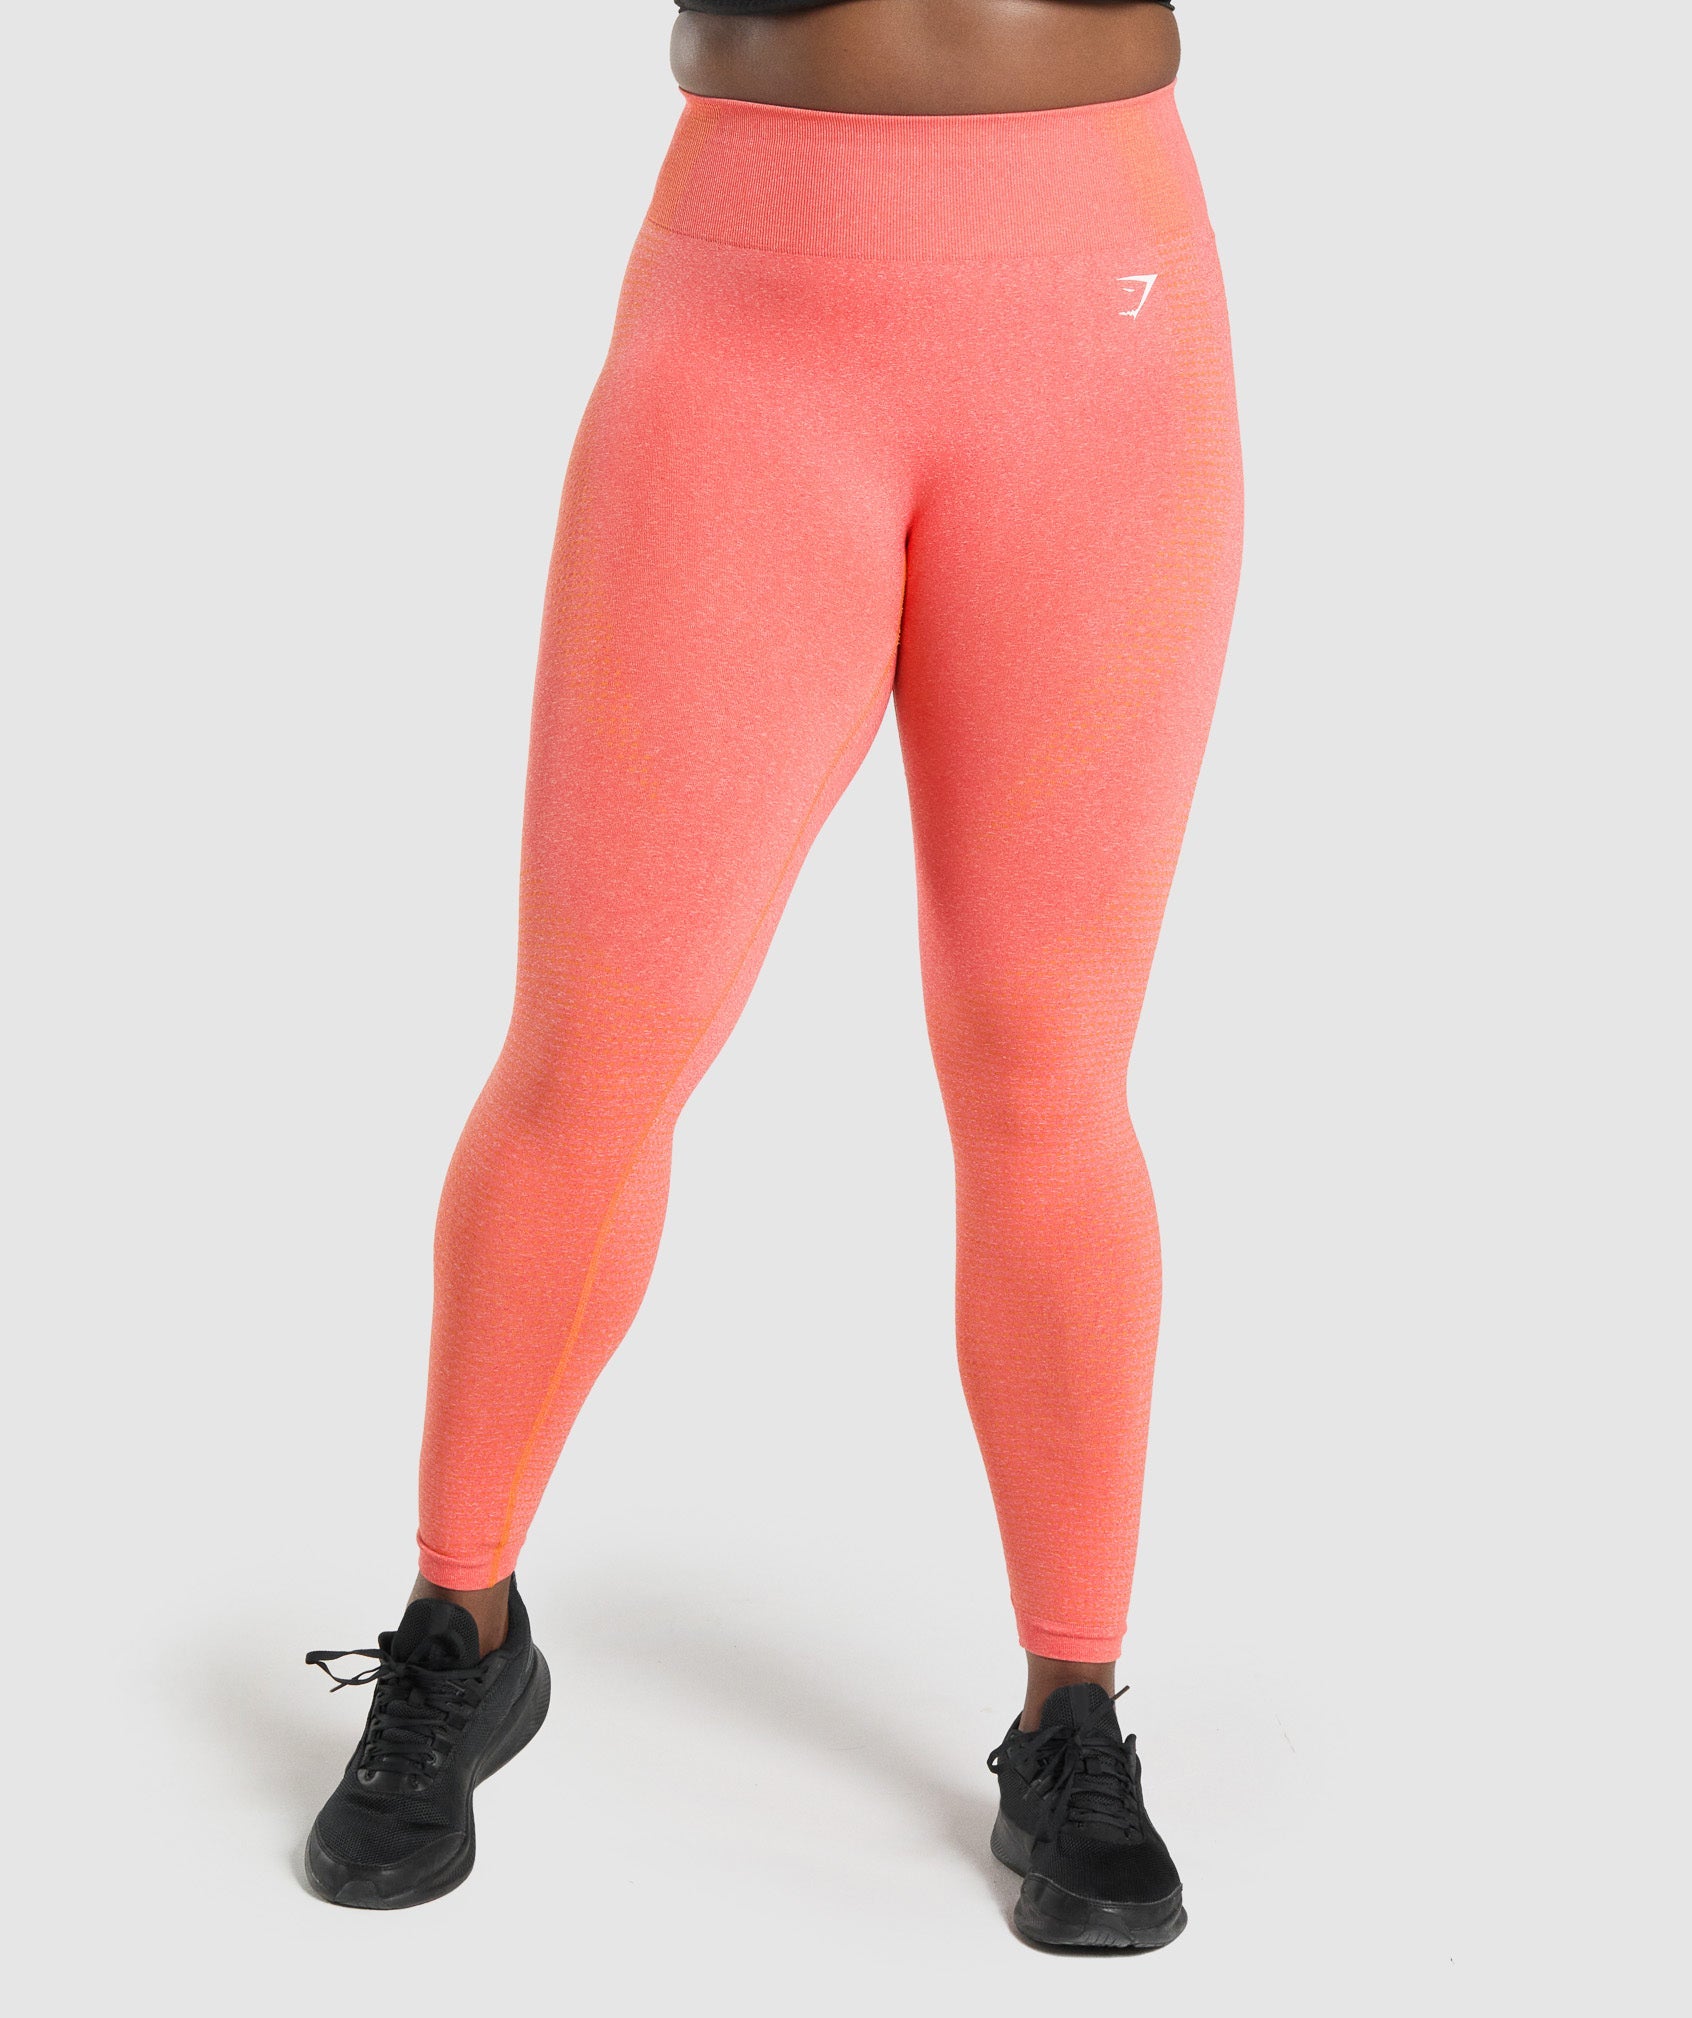 Gymshark Adapt Marl Seamless Leggings - Pepper Red/Zesty Orange